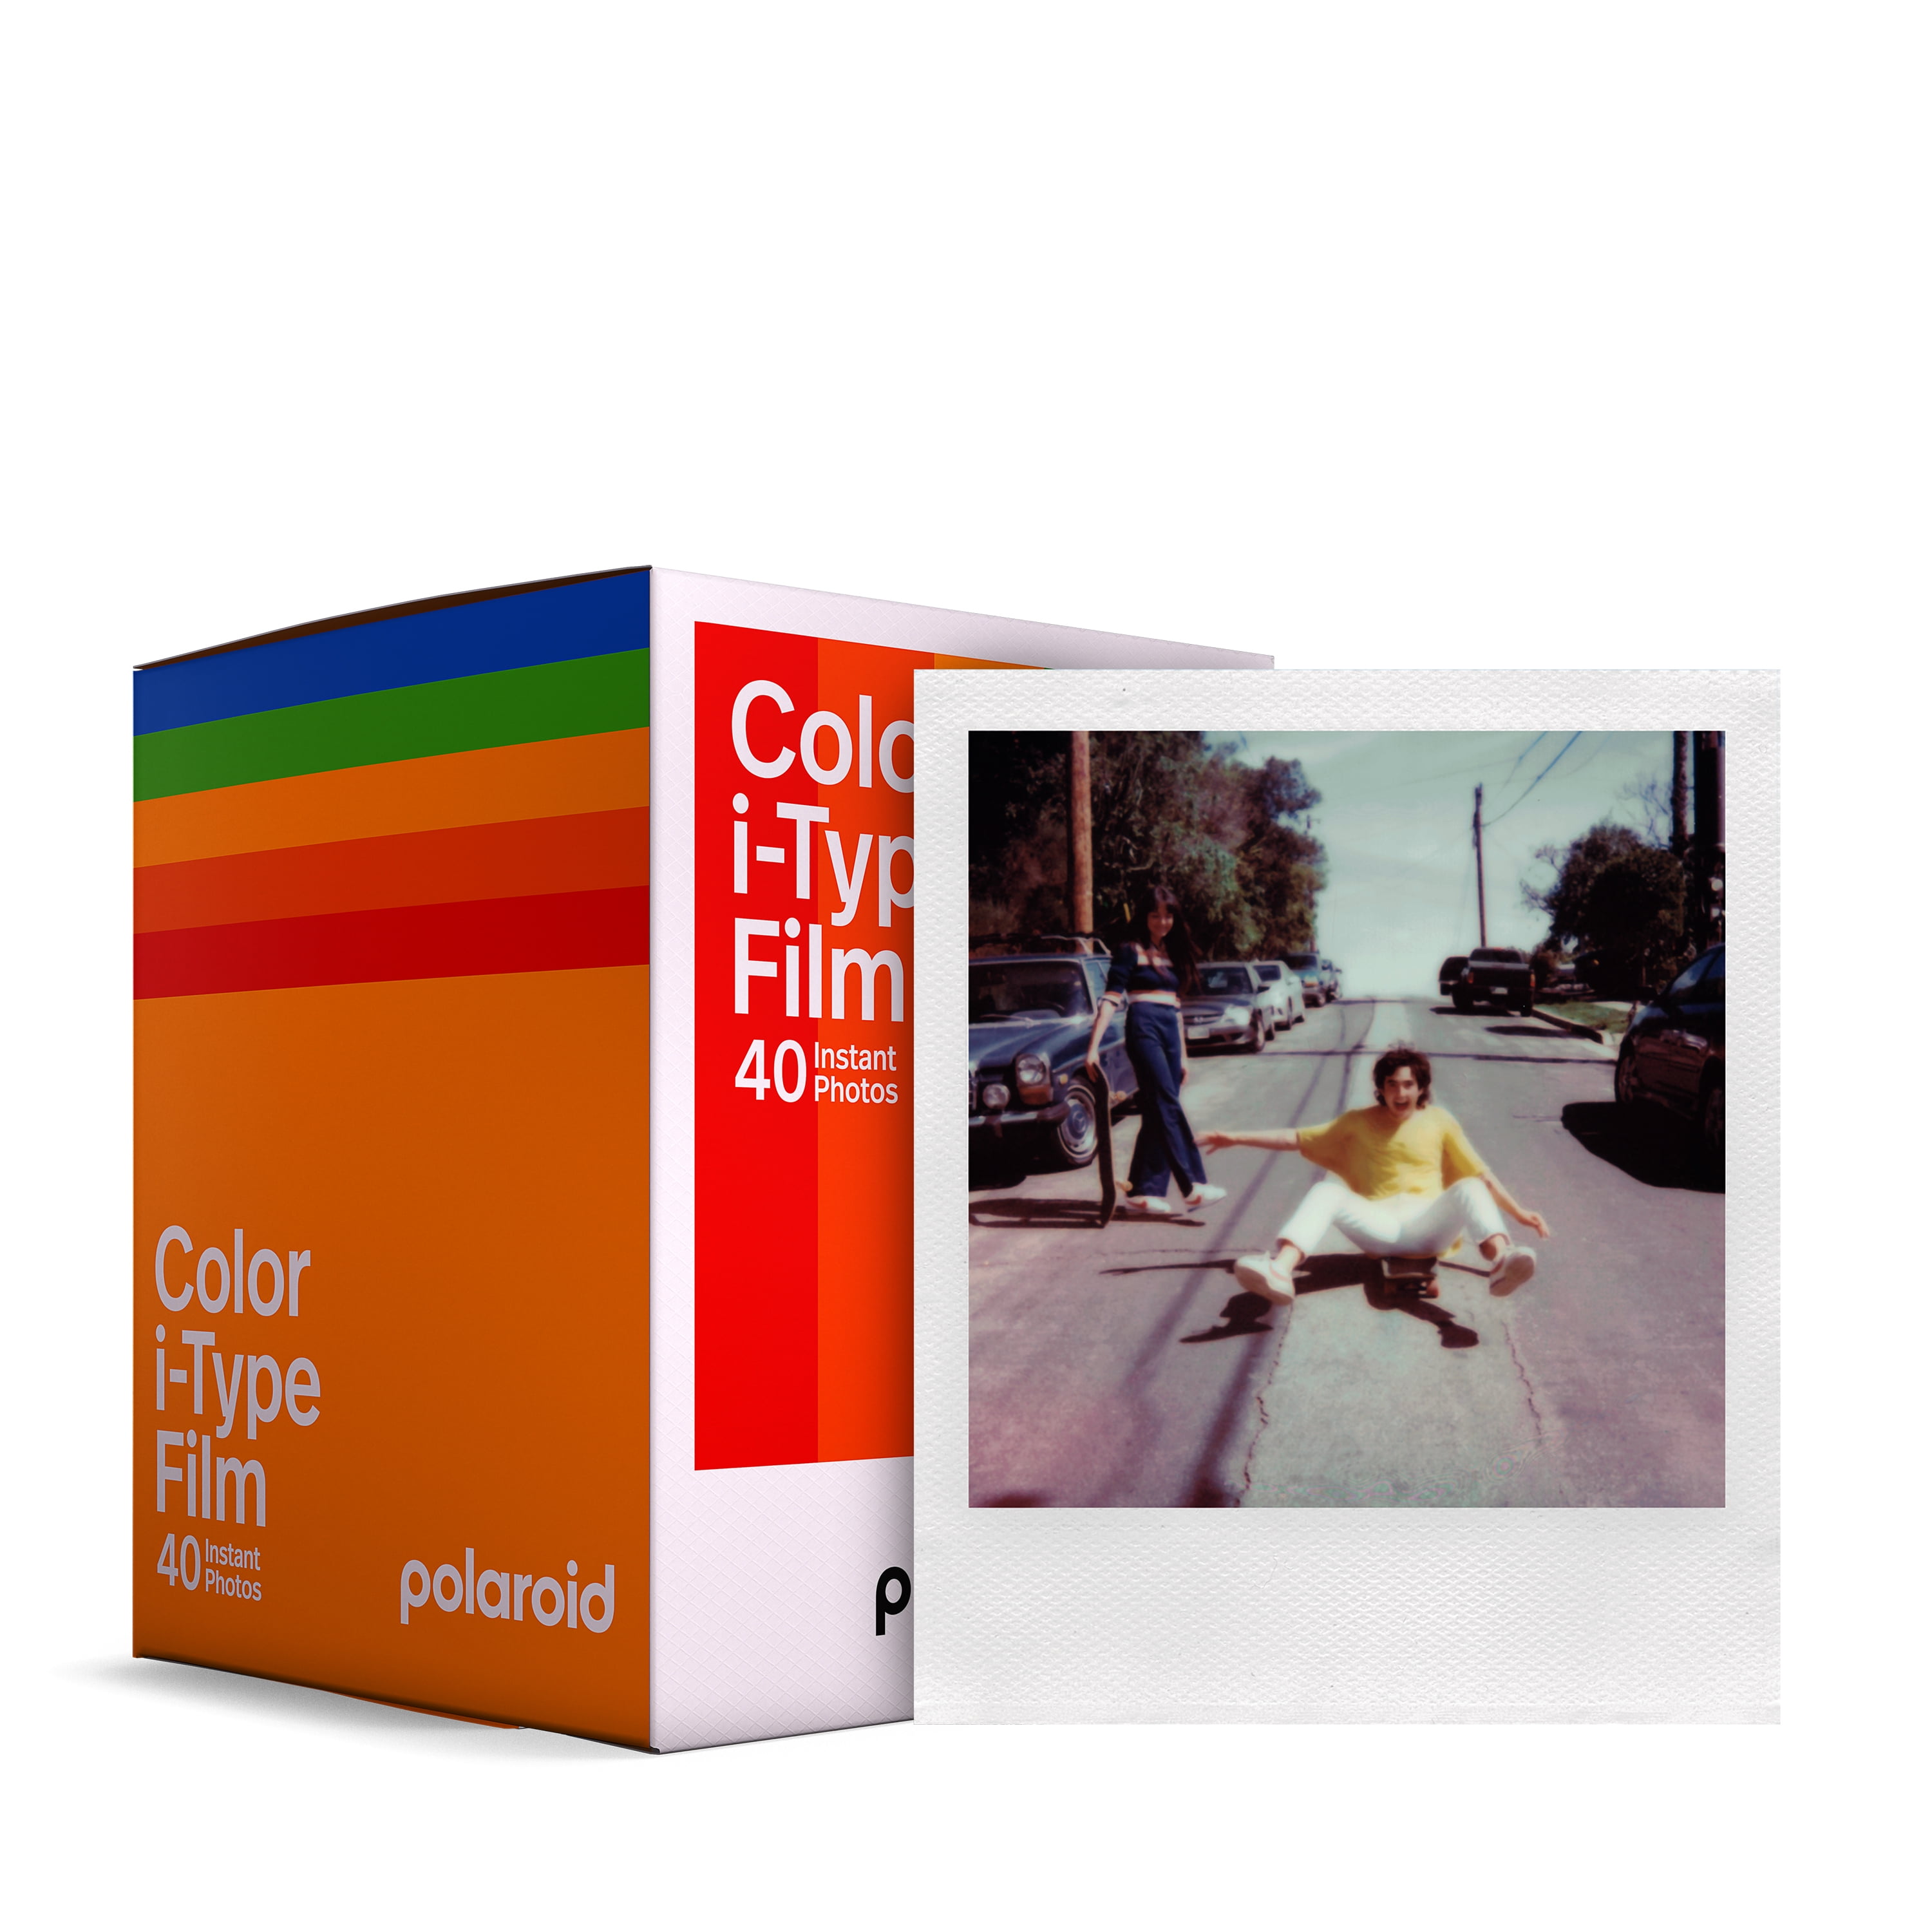 Papier photo instantané Polaroid Film i-Type couleur - Edition Summer -  double pack (16 films) sur